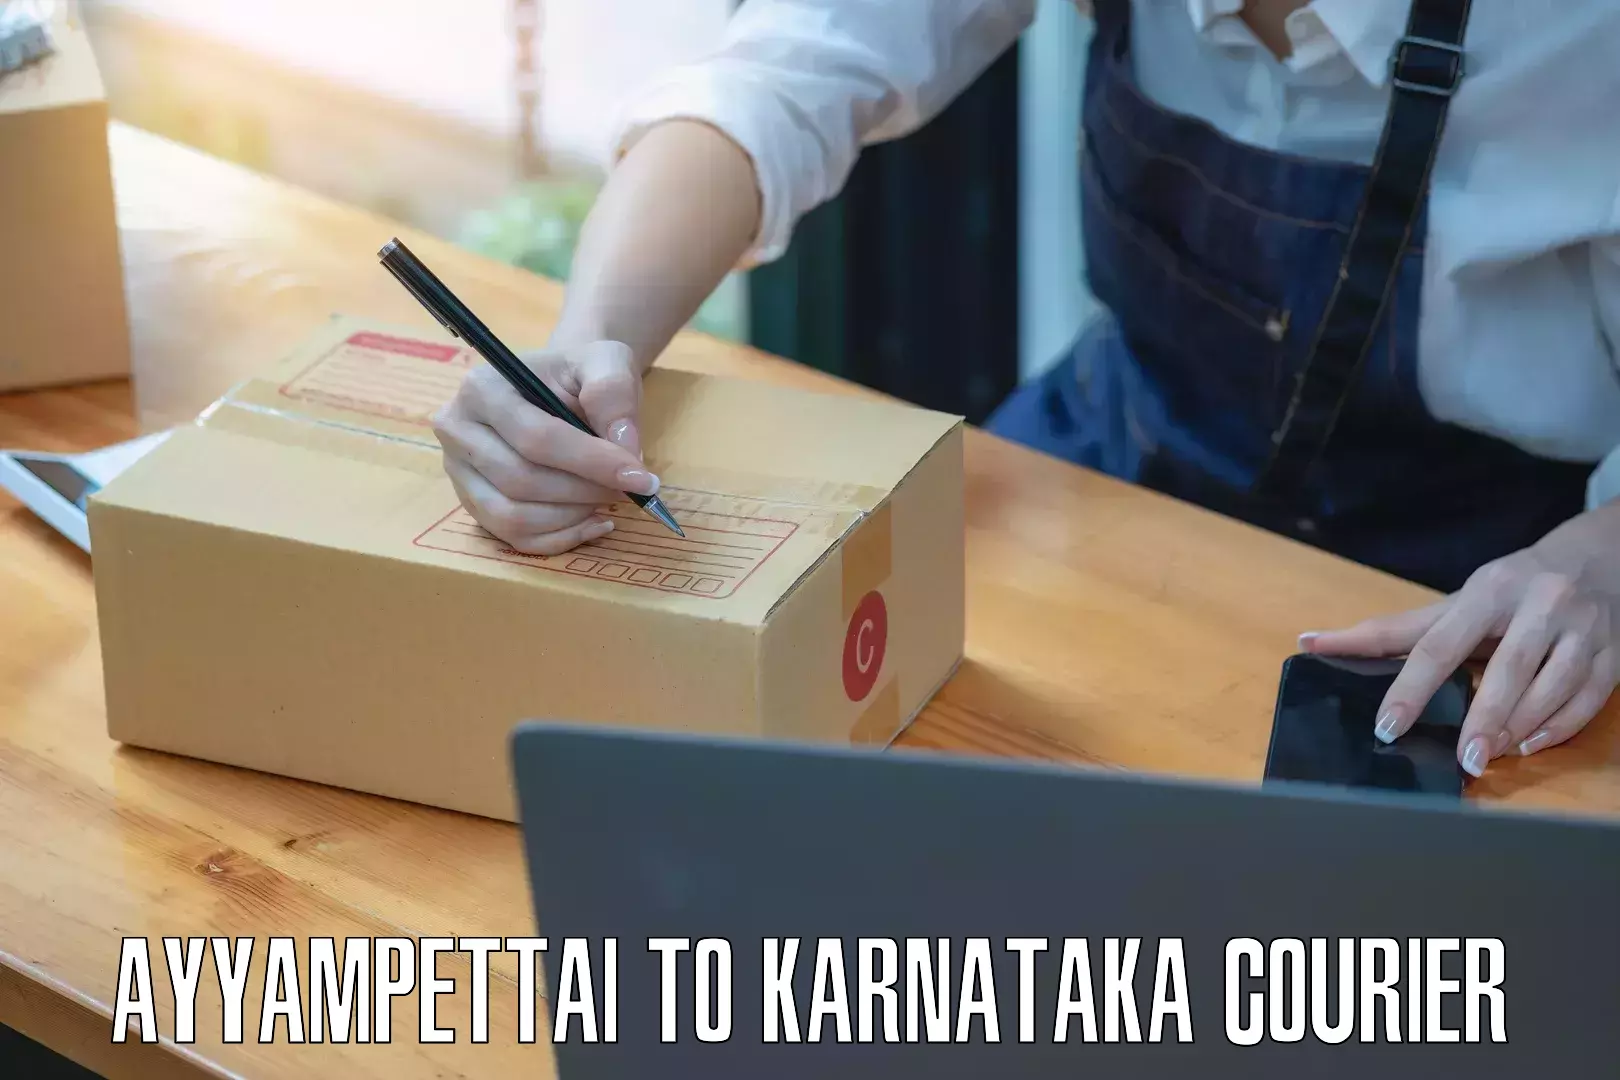 International courier networks Ayyampettai to Karnataka